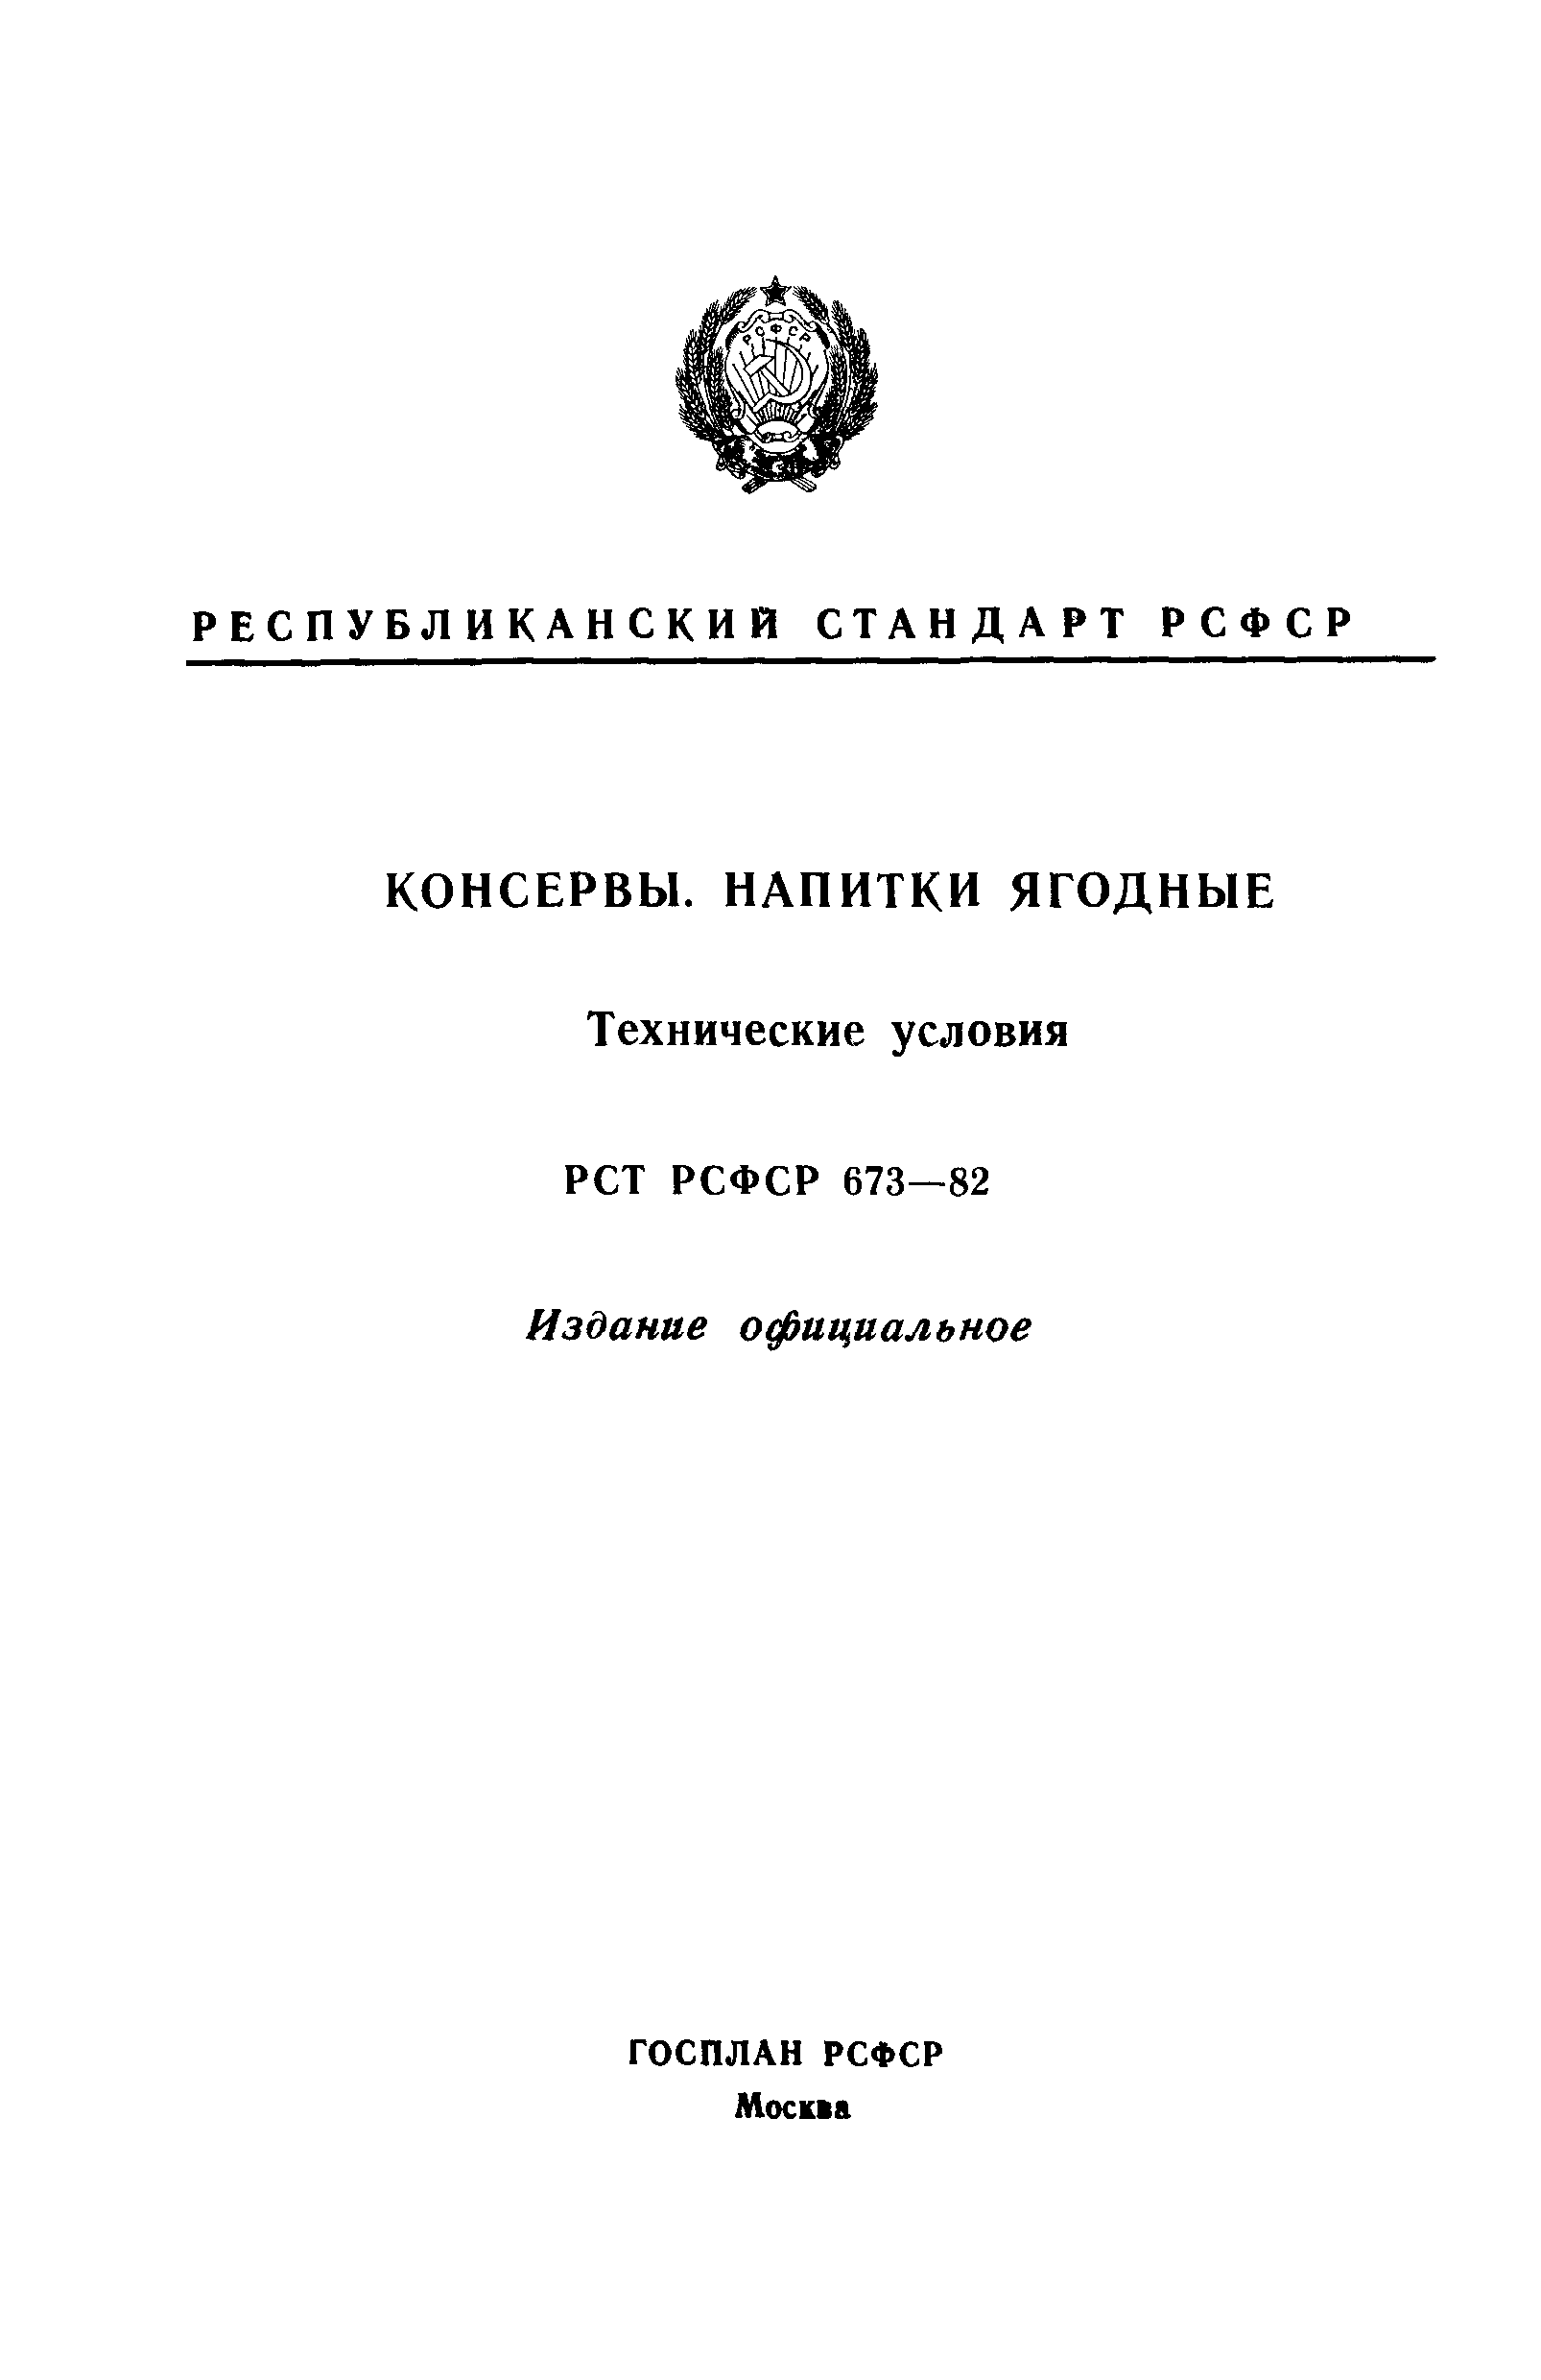 РСТ РСФСР 673-82